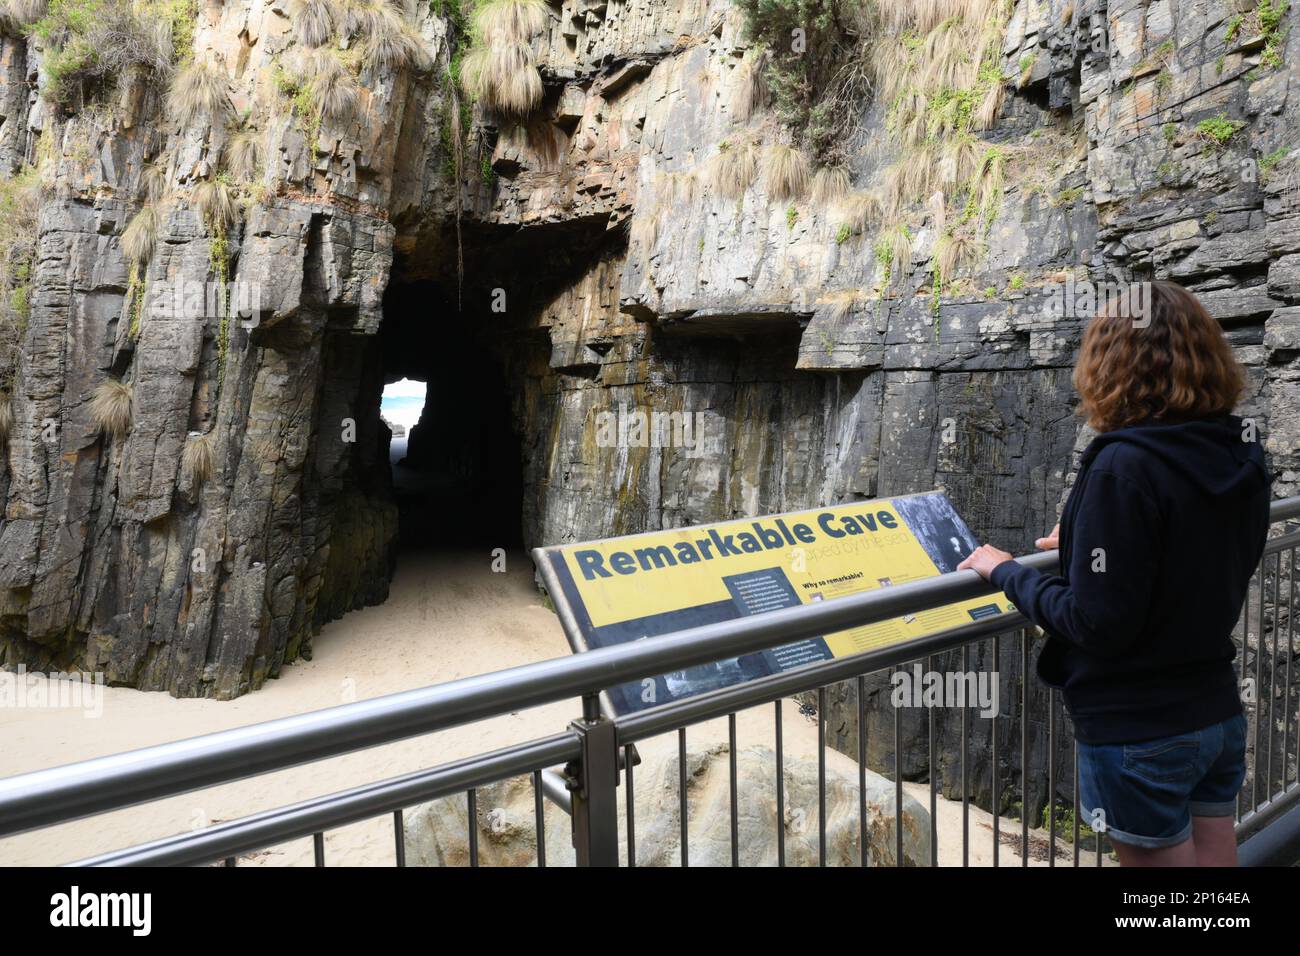 Bemerkenswerte Höhlen eine Meereshöhle unter den Klippen verbindet die Küste mit dem Meer, ausgehöhlt von Wellen. Ein Besucher sieht dieses geologische Merkmal von der Plattform aus. Stockfoto